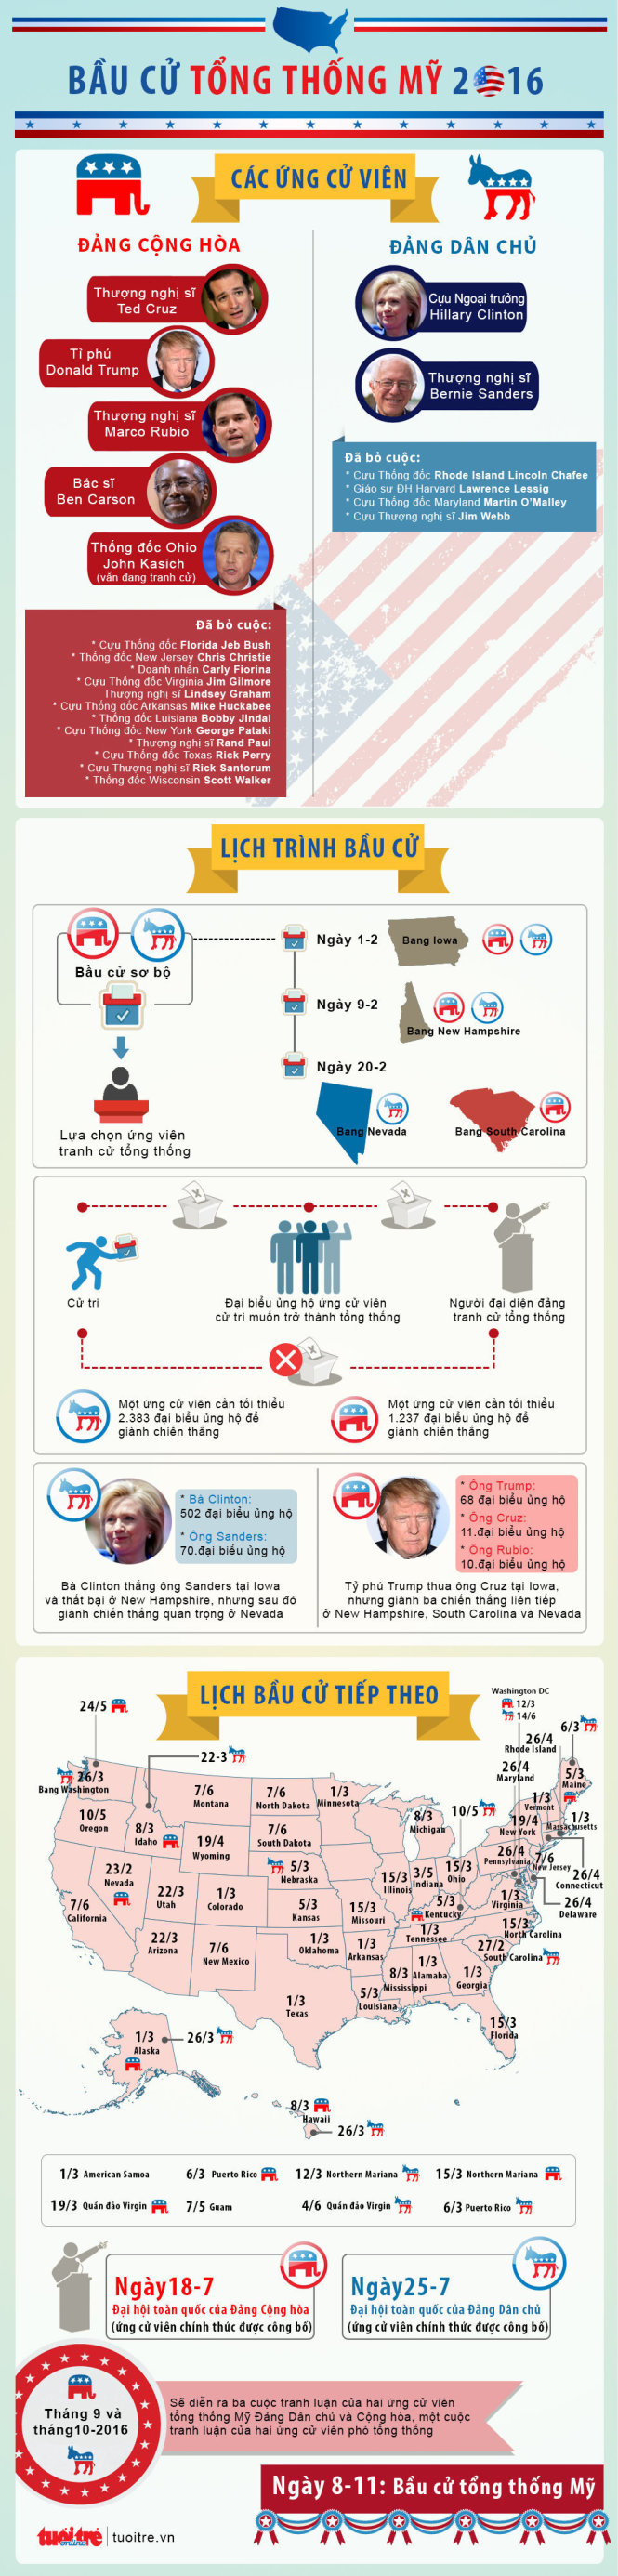 Toàn cảnh diễn biến căng thẳng bầu cử Tổng thống Mỹ - Infographic của Tuổi Trẻ